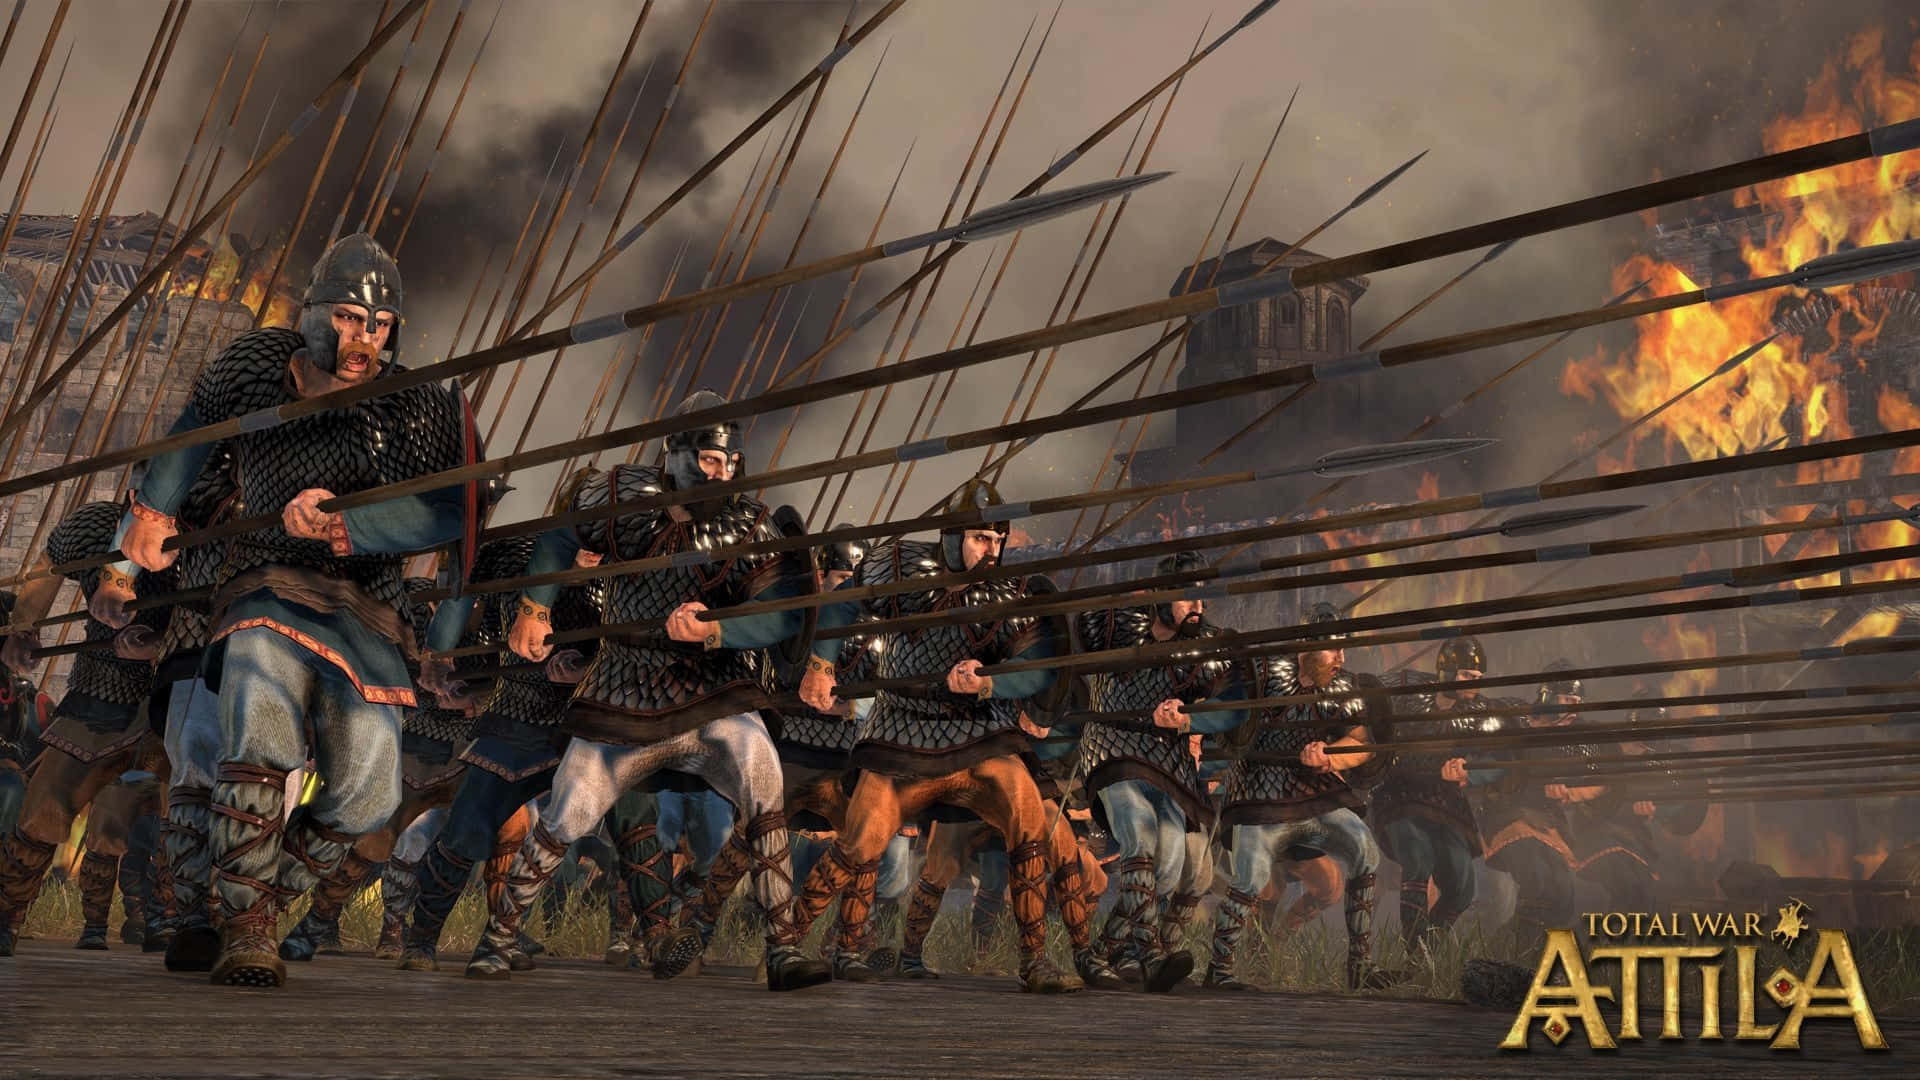 Meisteredie Kunst Des Krieges Im Großartigen Spiel Attila Total War Wallpaper